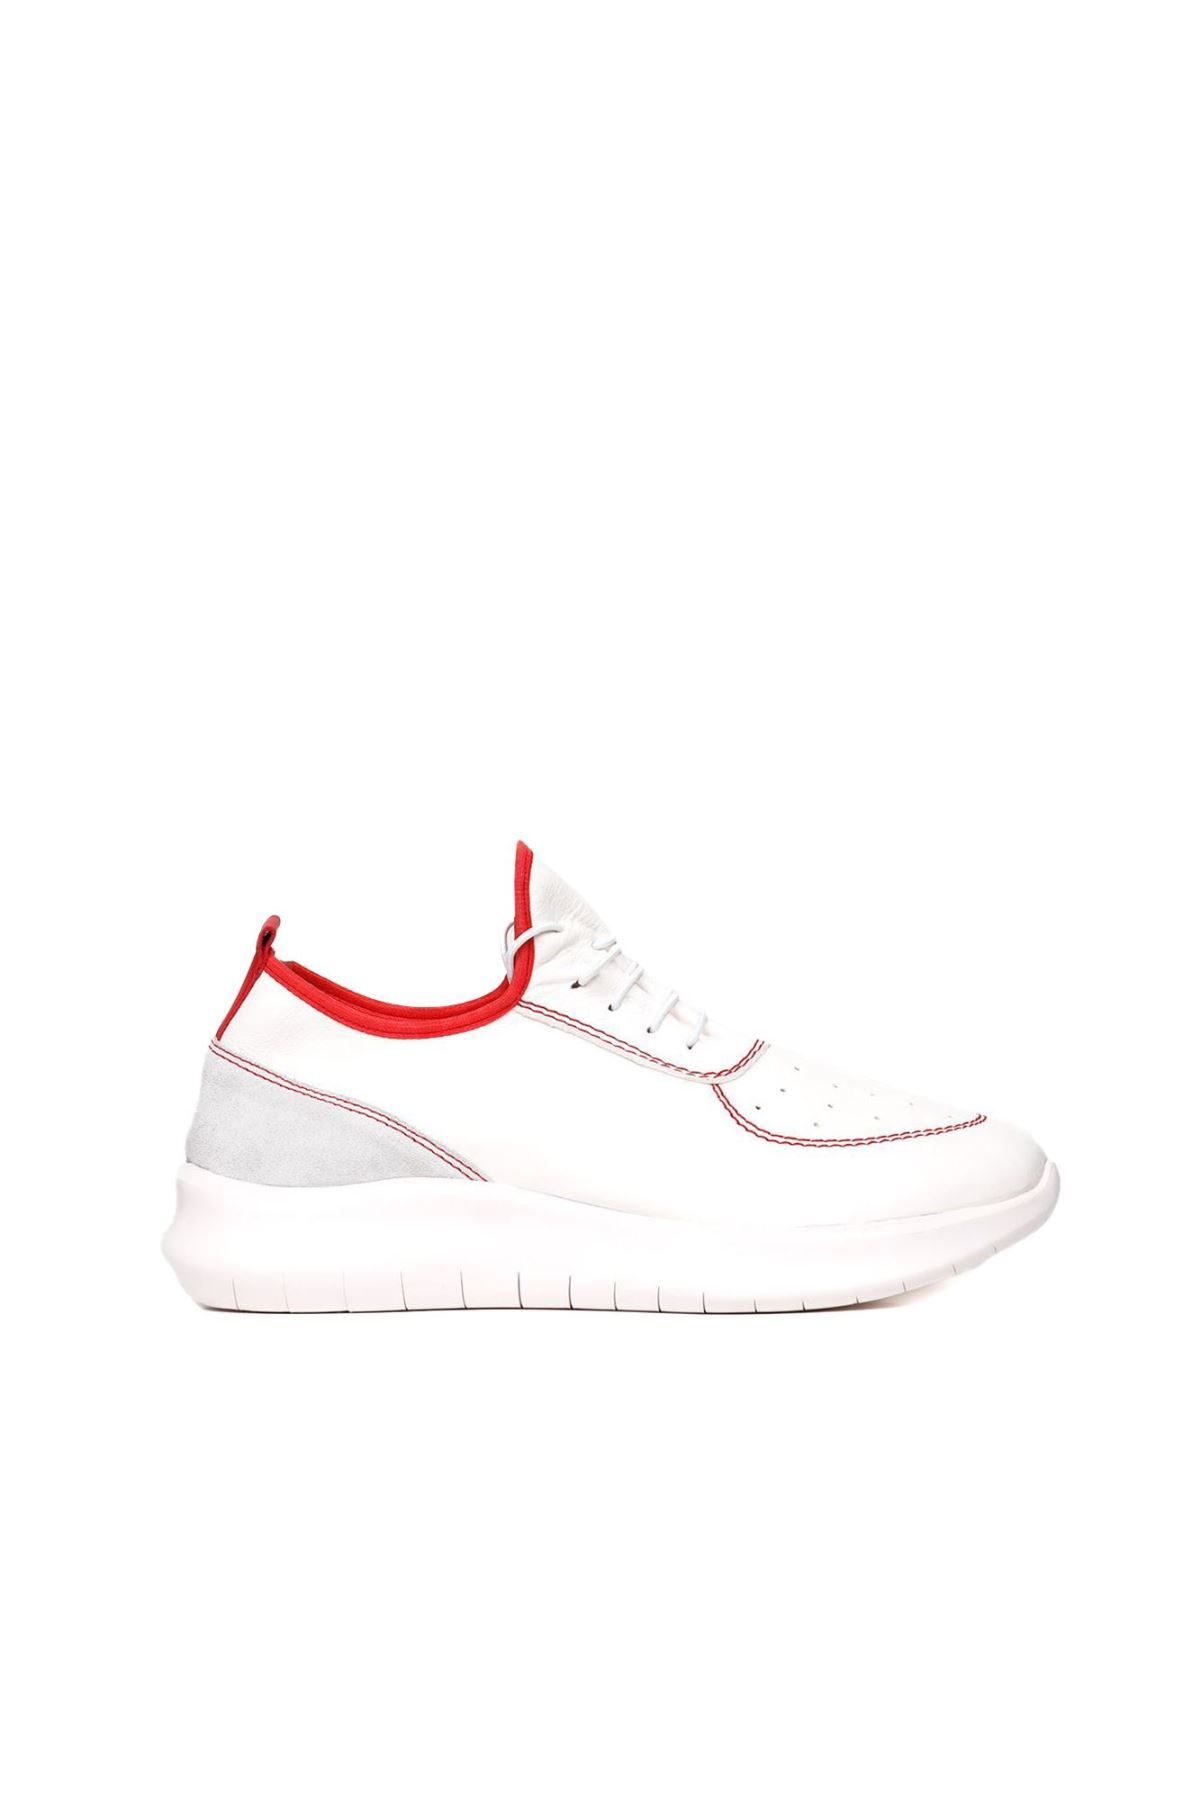 BUENO Shoes Beyaz Kırmızı Deri Erkek Spor Ayakkabı